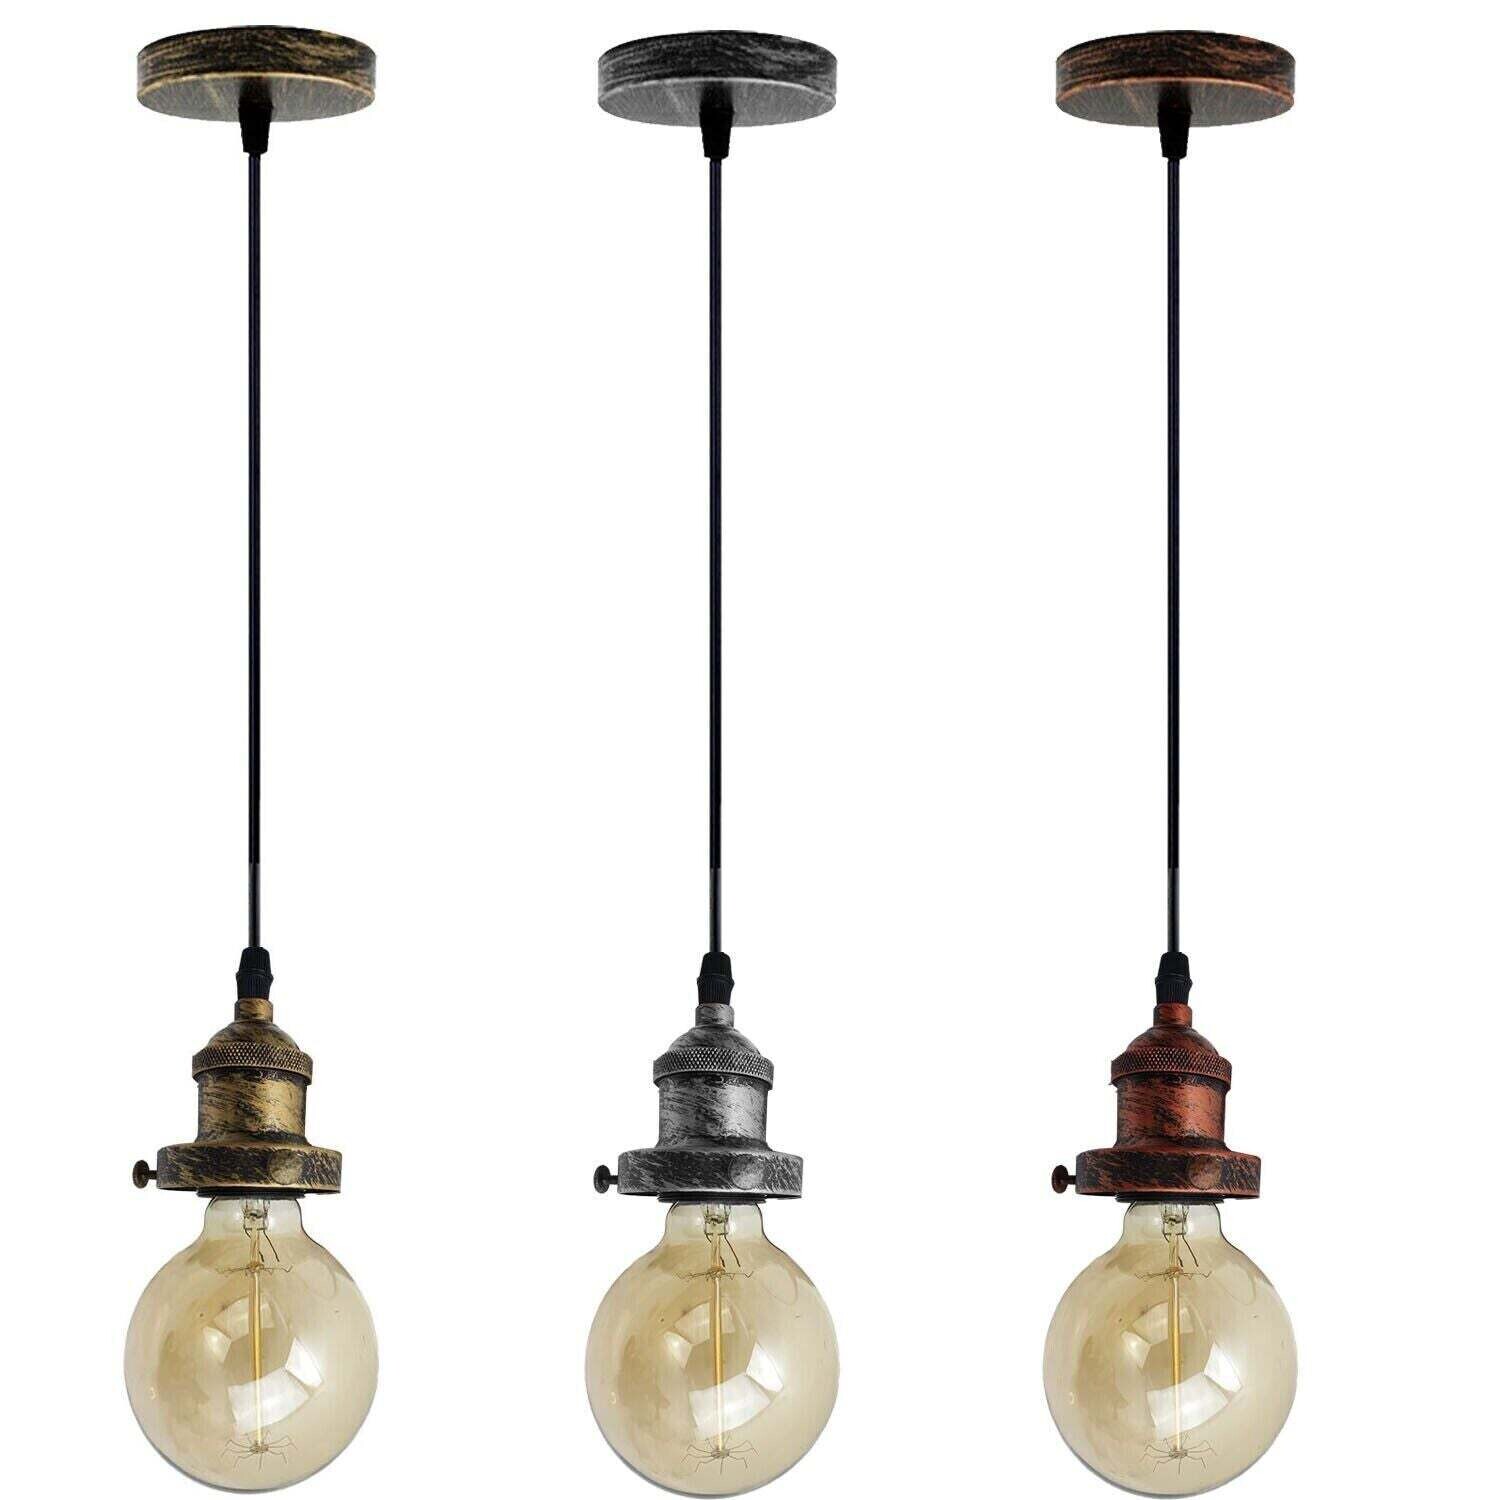 E26 Ceiling Rose Light Fitting Vintage Industrial Pendant Lamp Bulb Holder Light~1542